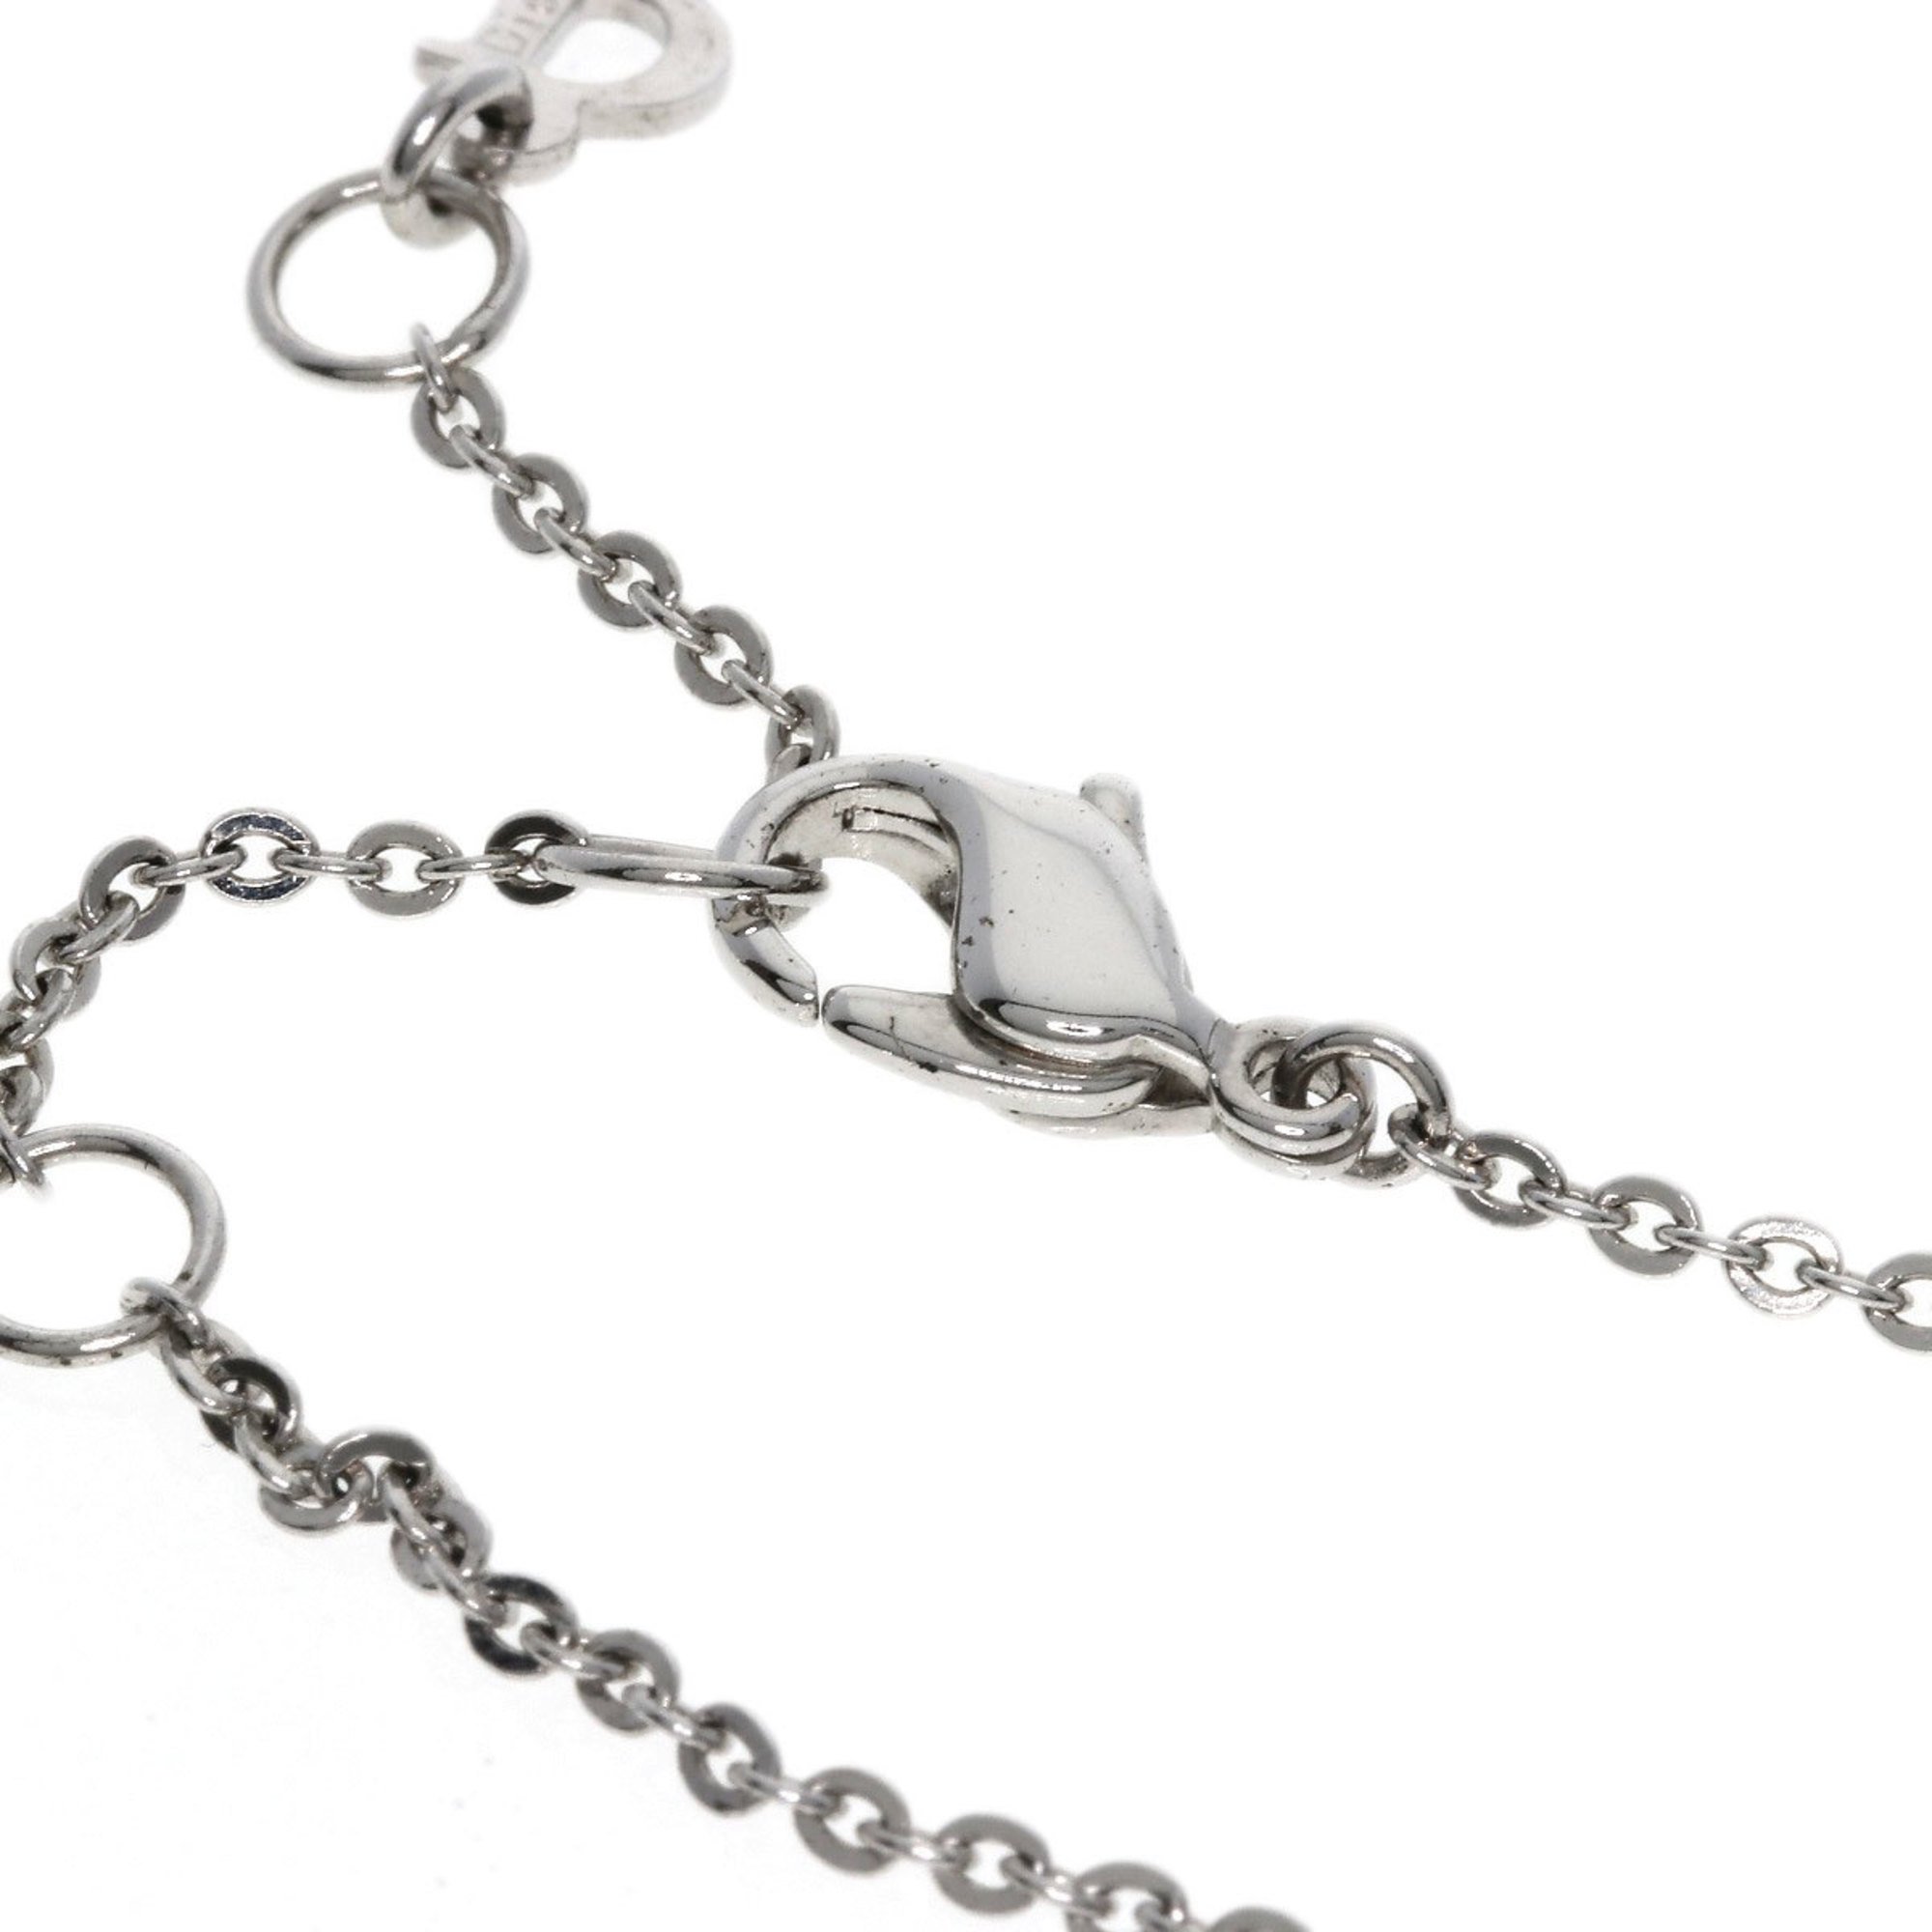 Christian Dior Trotter Bracelet for Women CHRISTIAN DIOR